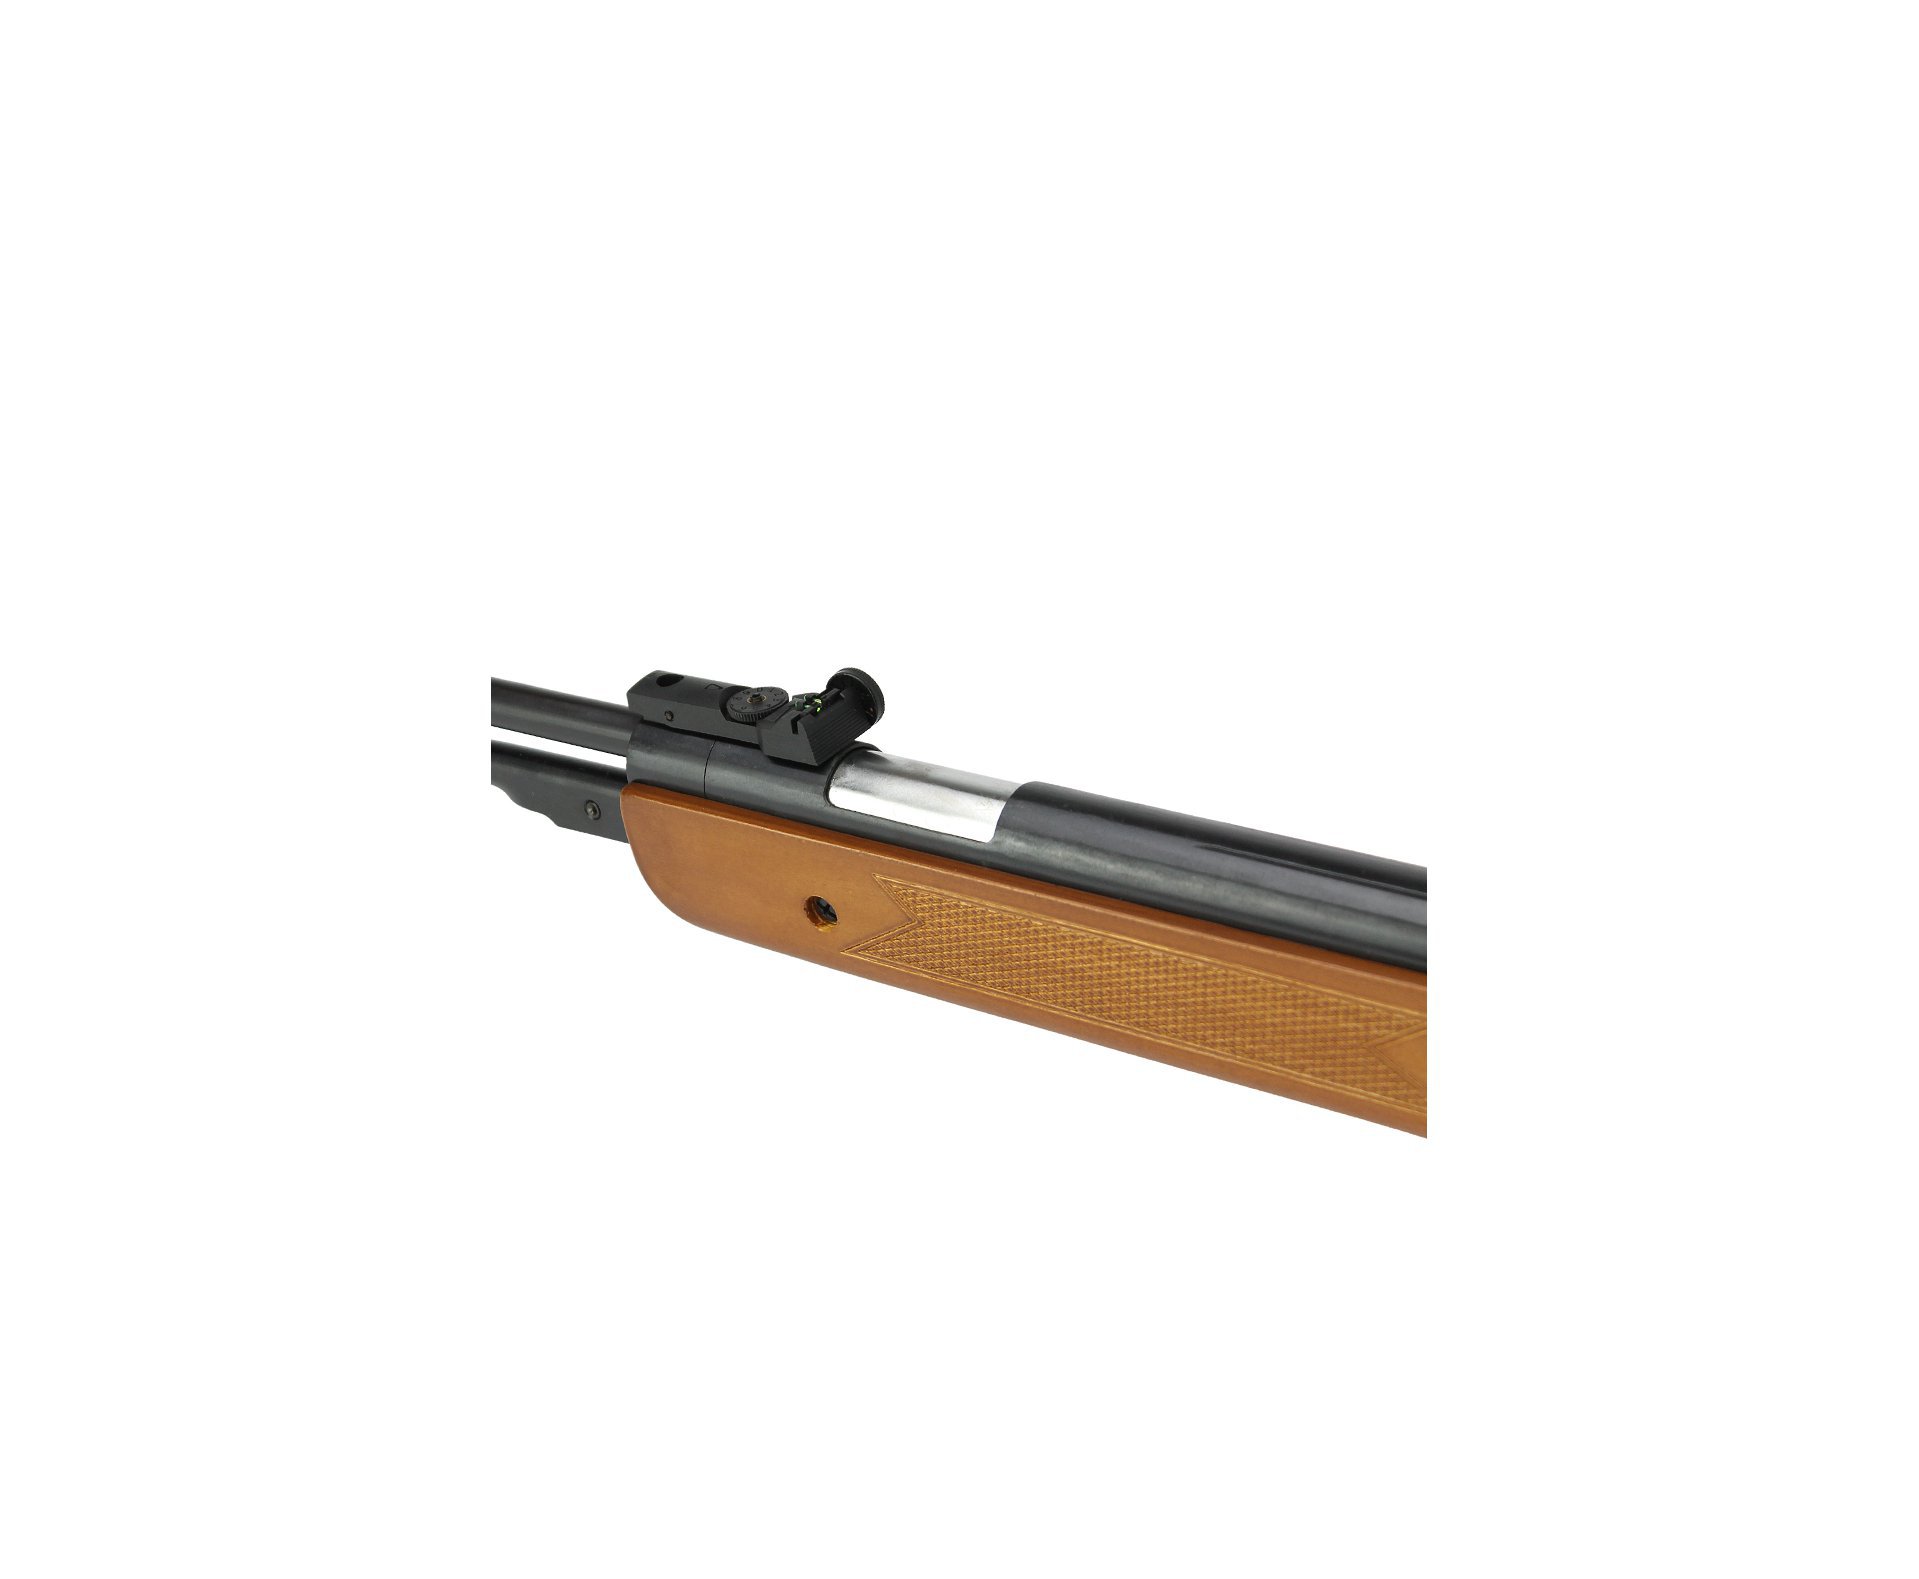 Carabina De Pressão Under-b Wf600 Cal 5,5mm Wood - Qgk Spa